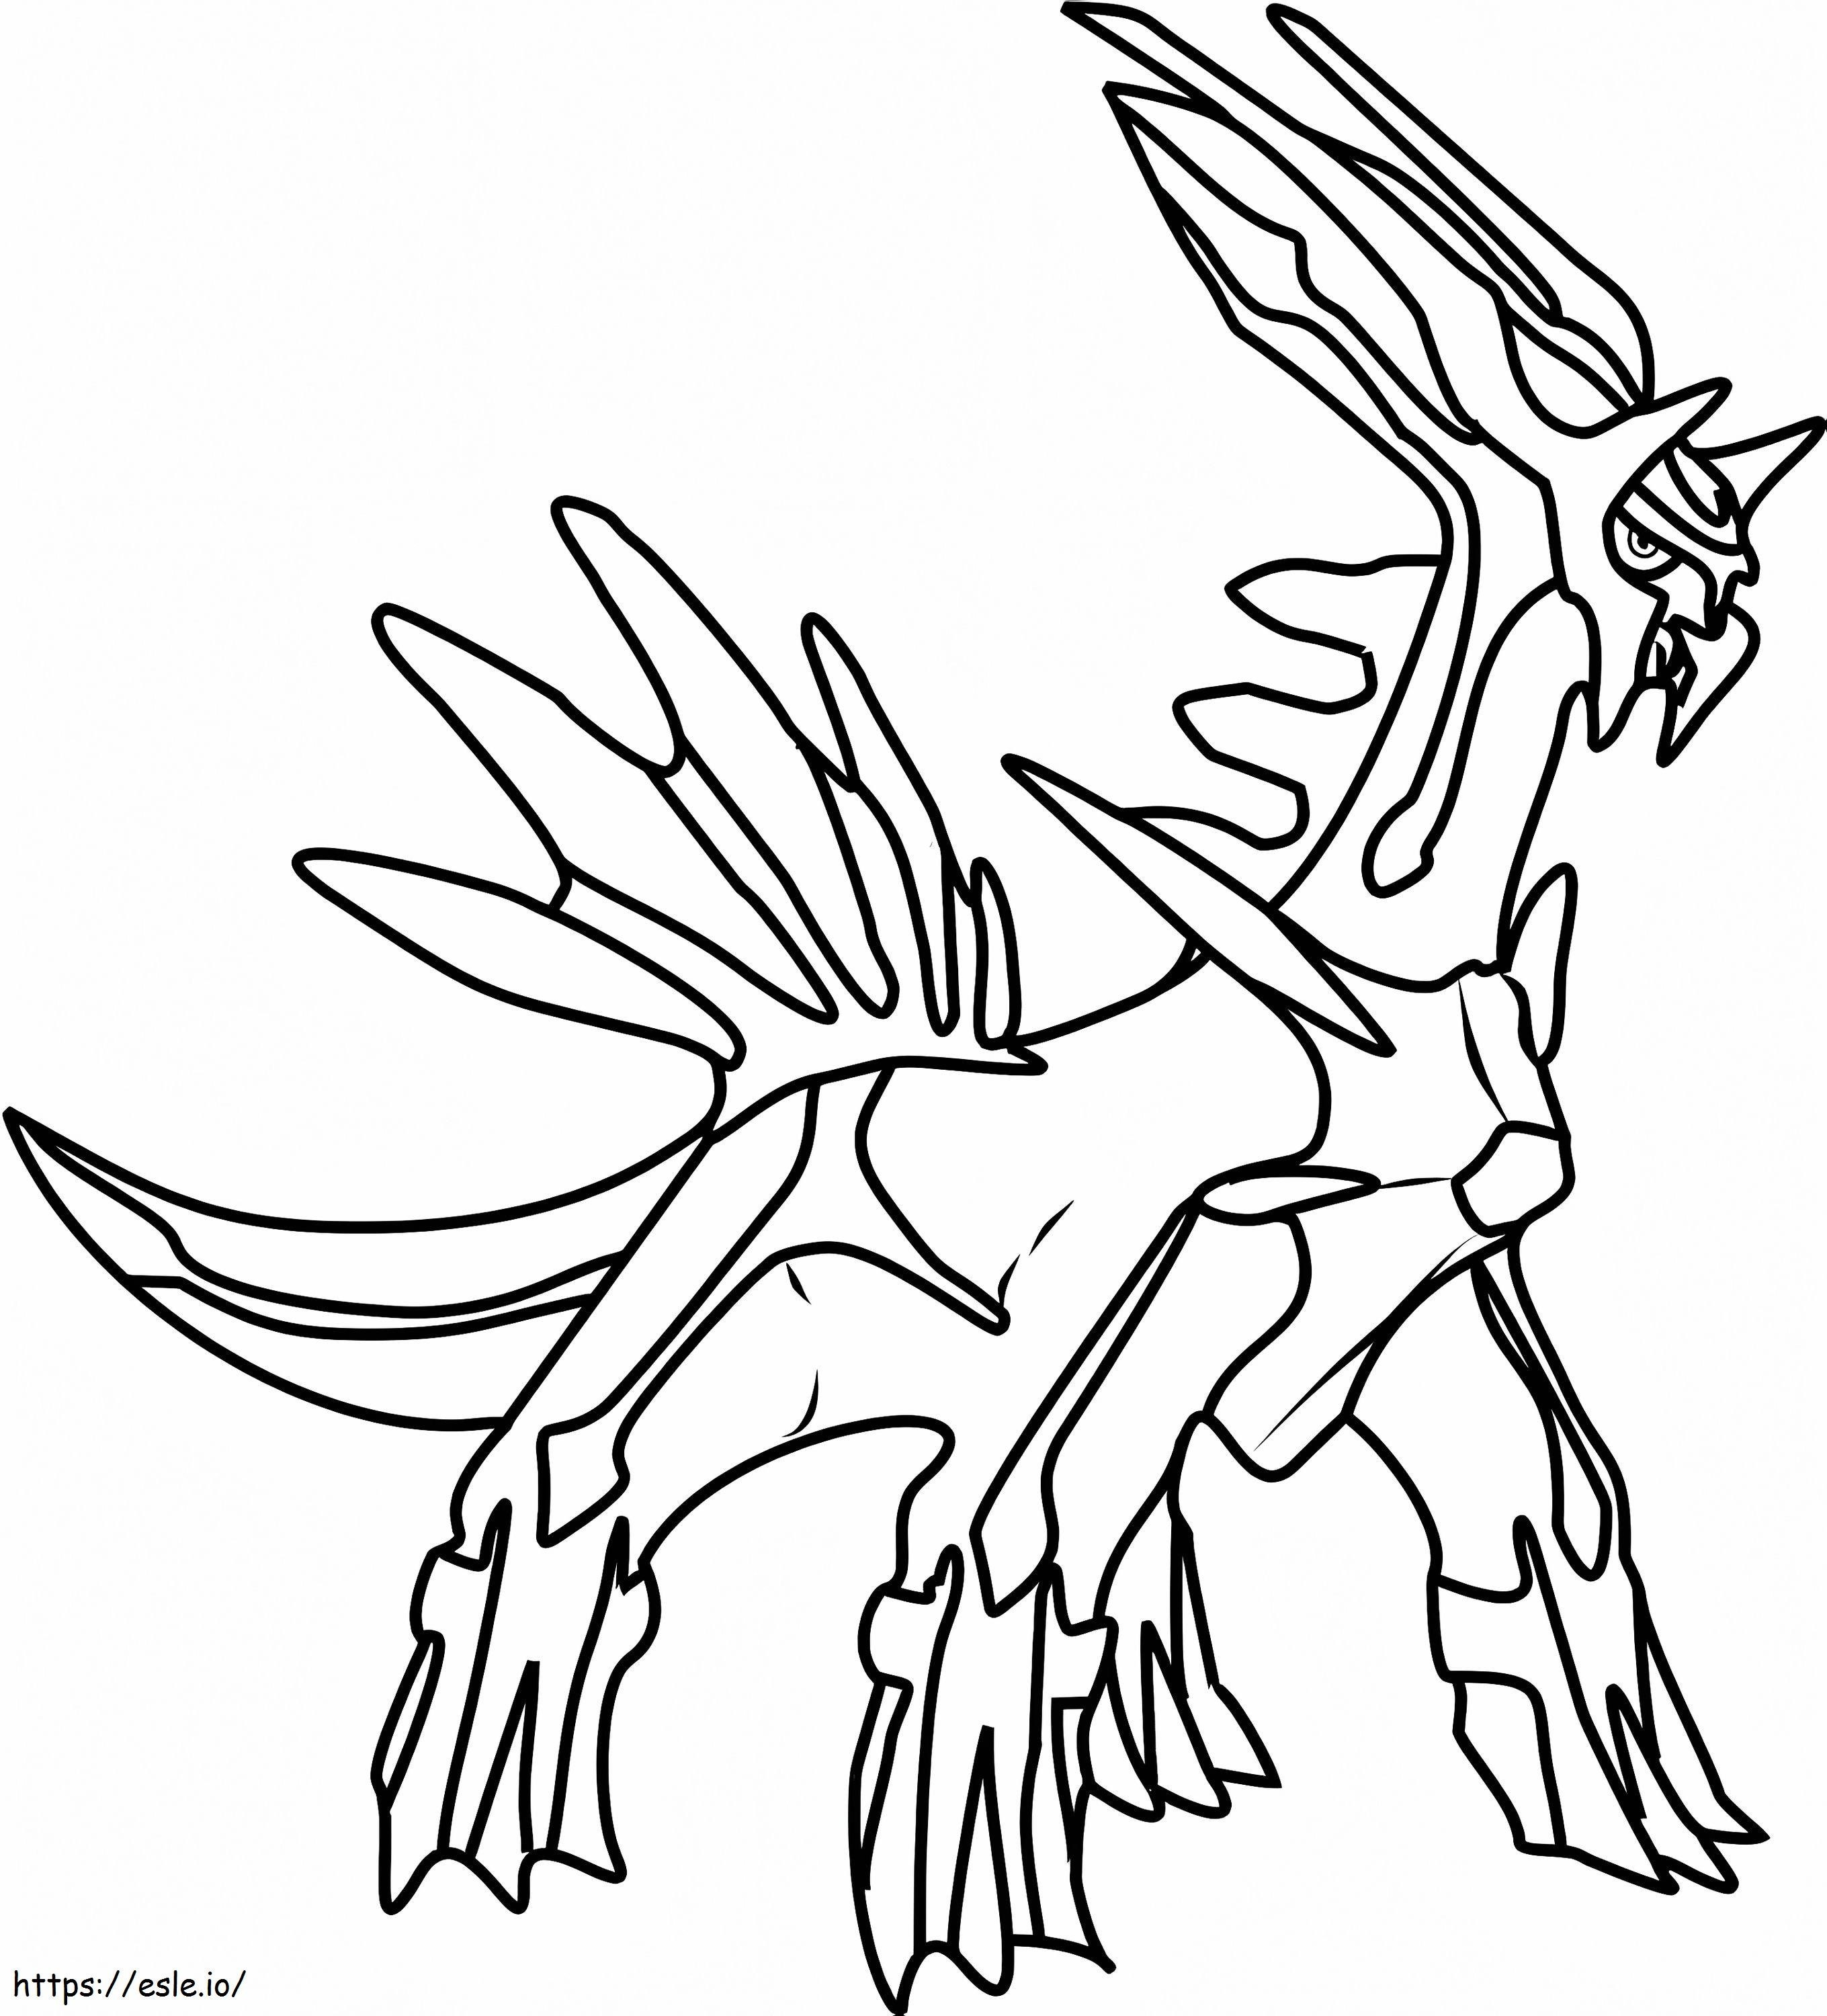 Coloriage Pokémon Légendaire Dialga à imprimer dessin